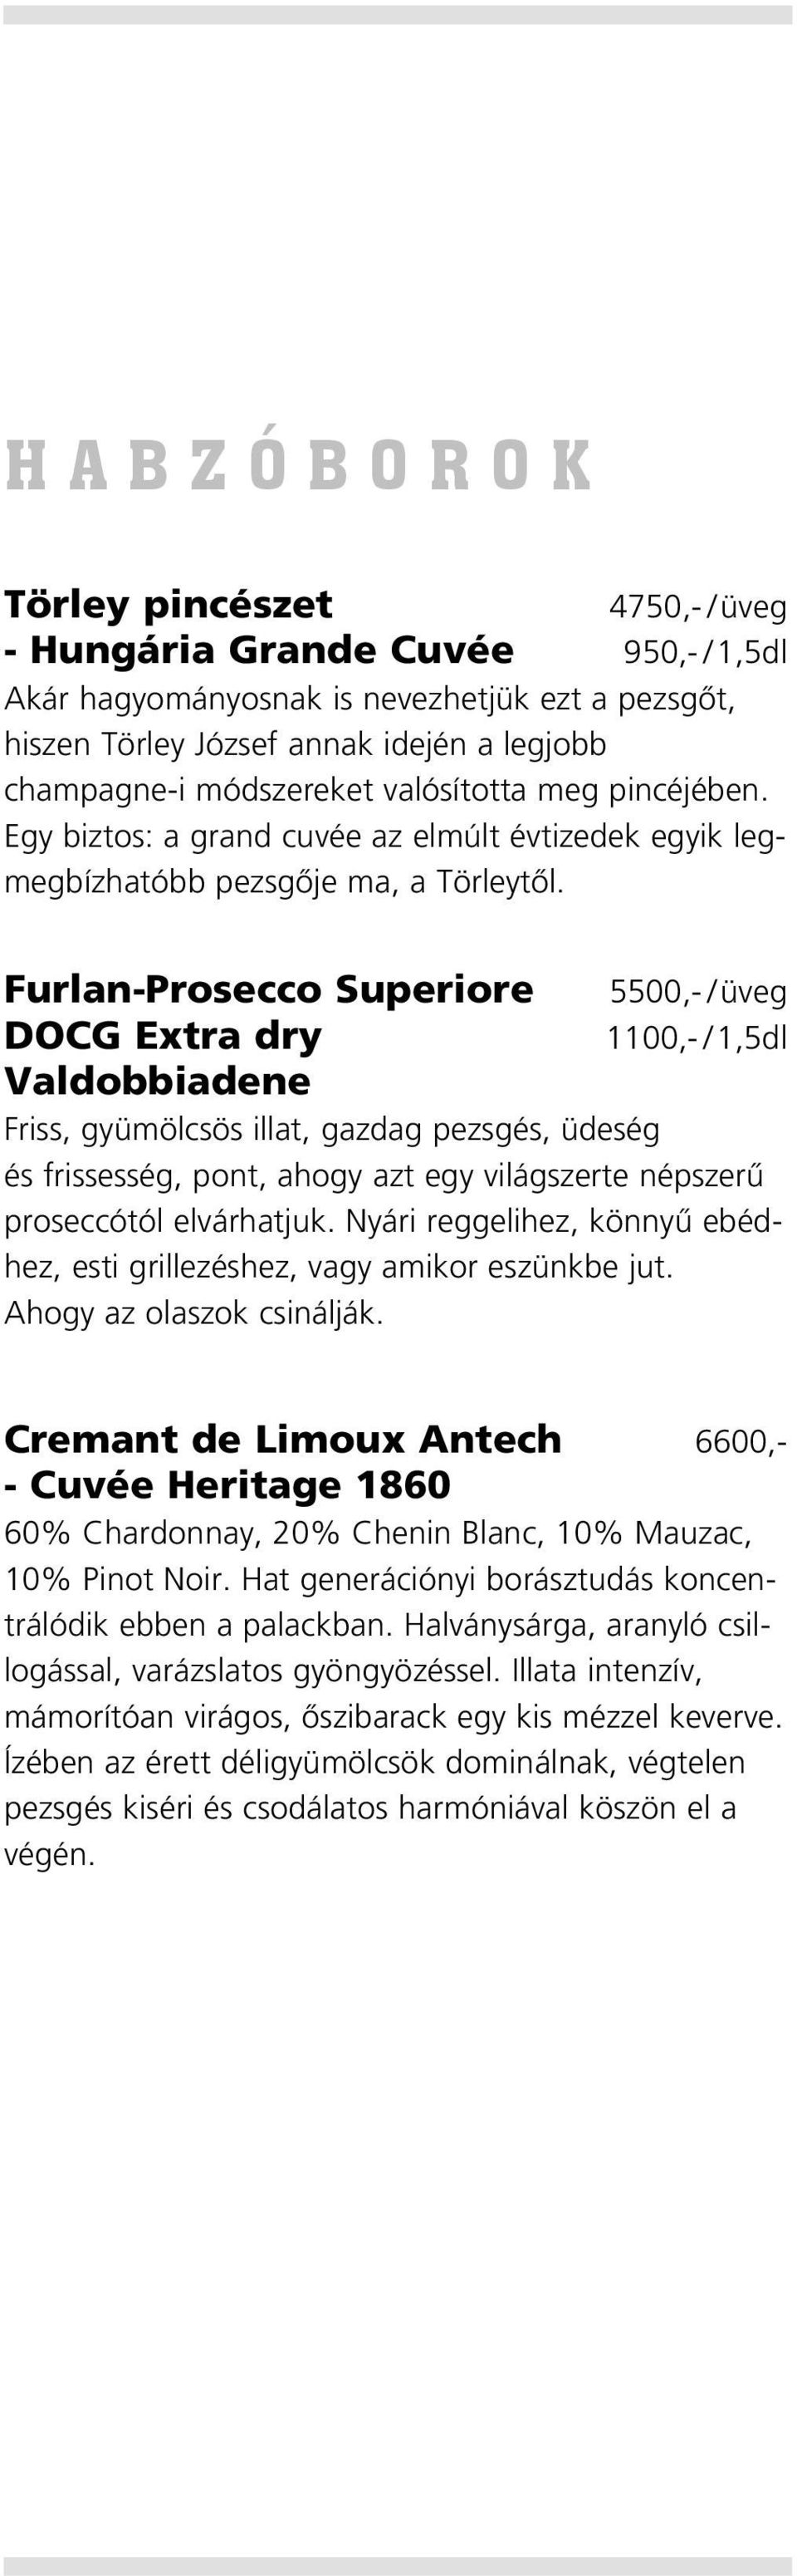 Furlan-Prosecco Superiore 5500,- /üveg DOCG Extra dry 1100,- / 1,5dl Valdobbiadene Friss, gyümölcsös illat, gazdag pezsgés, üdeség és frissesség, pont, ahogy azt egy világszerte népszerû proseccótól